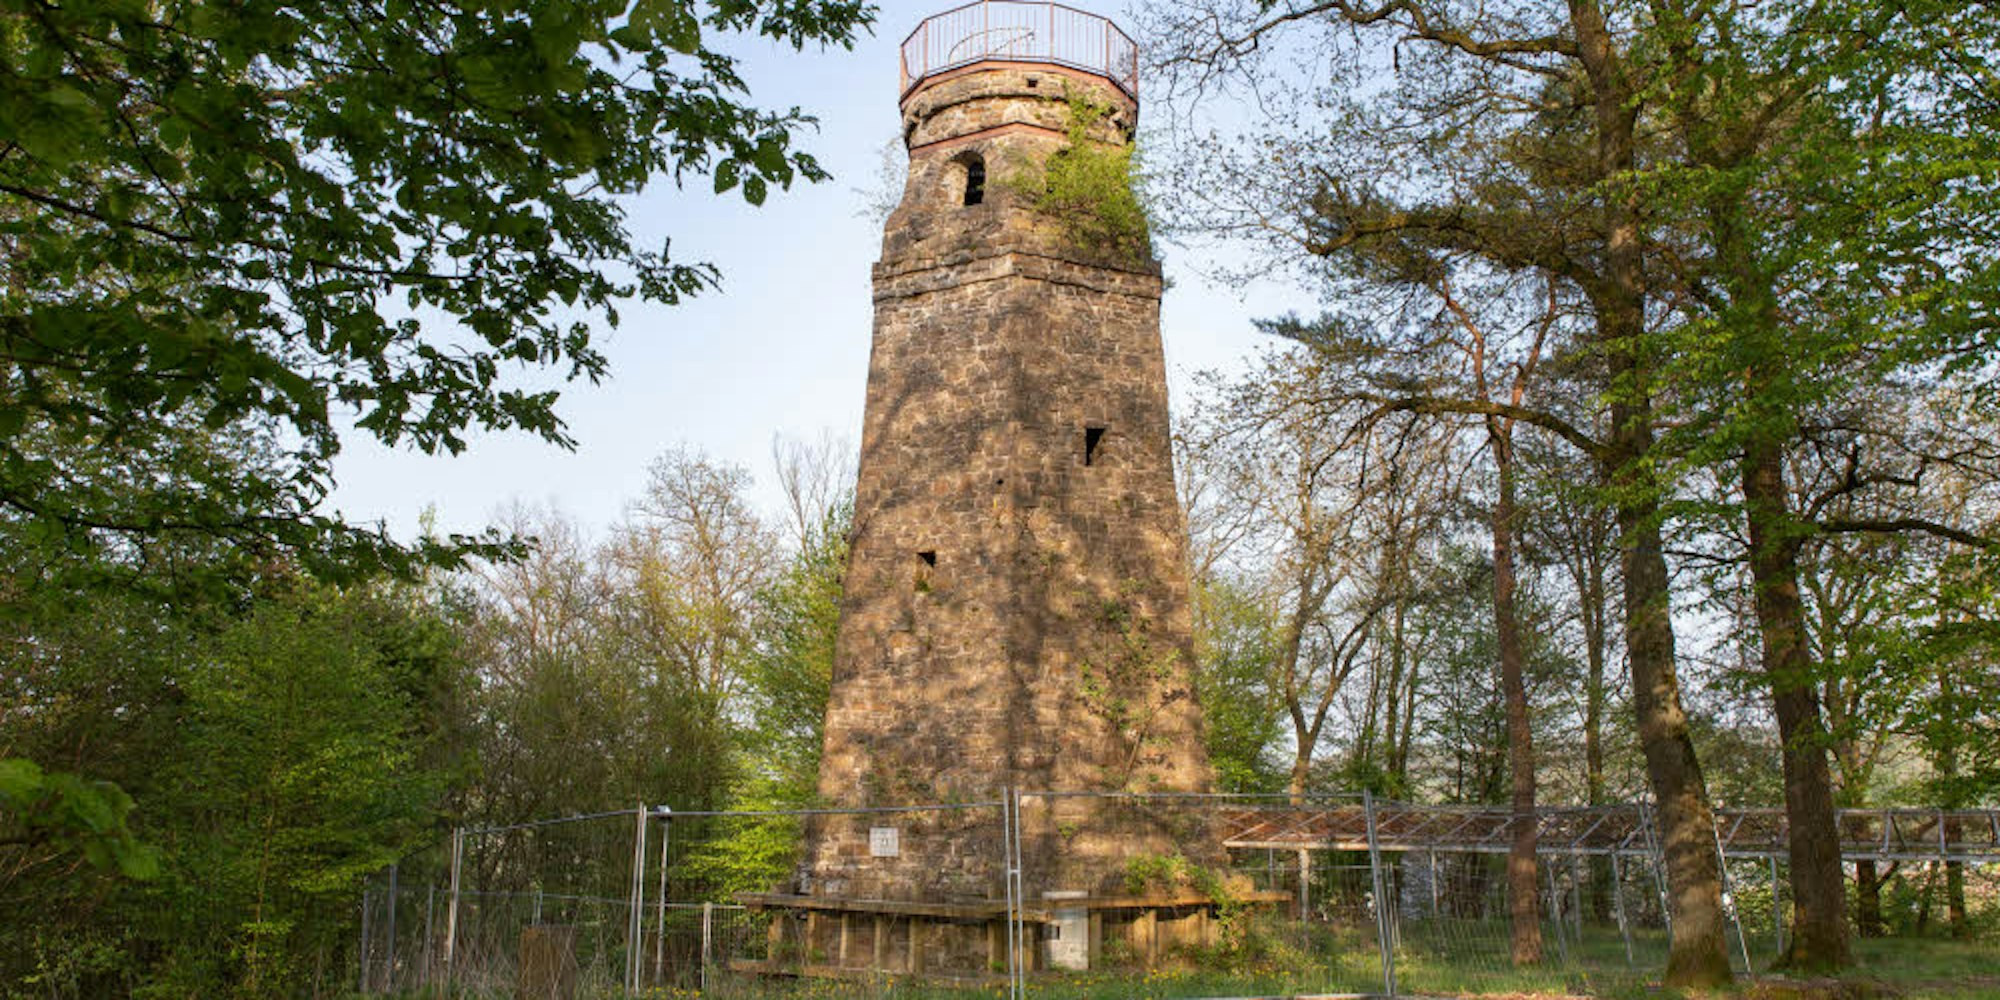 Weil aus der Außenmauer Steine herabstürzten, ist der Bismarckturm schon seit Jahren gesperrt. Damit war auch das Ende des traditionellen Türmchenfests besiegelt.